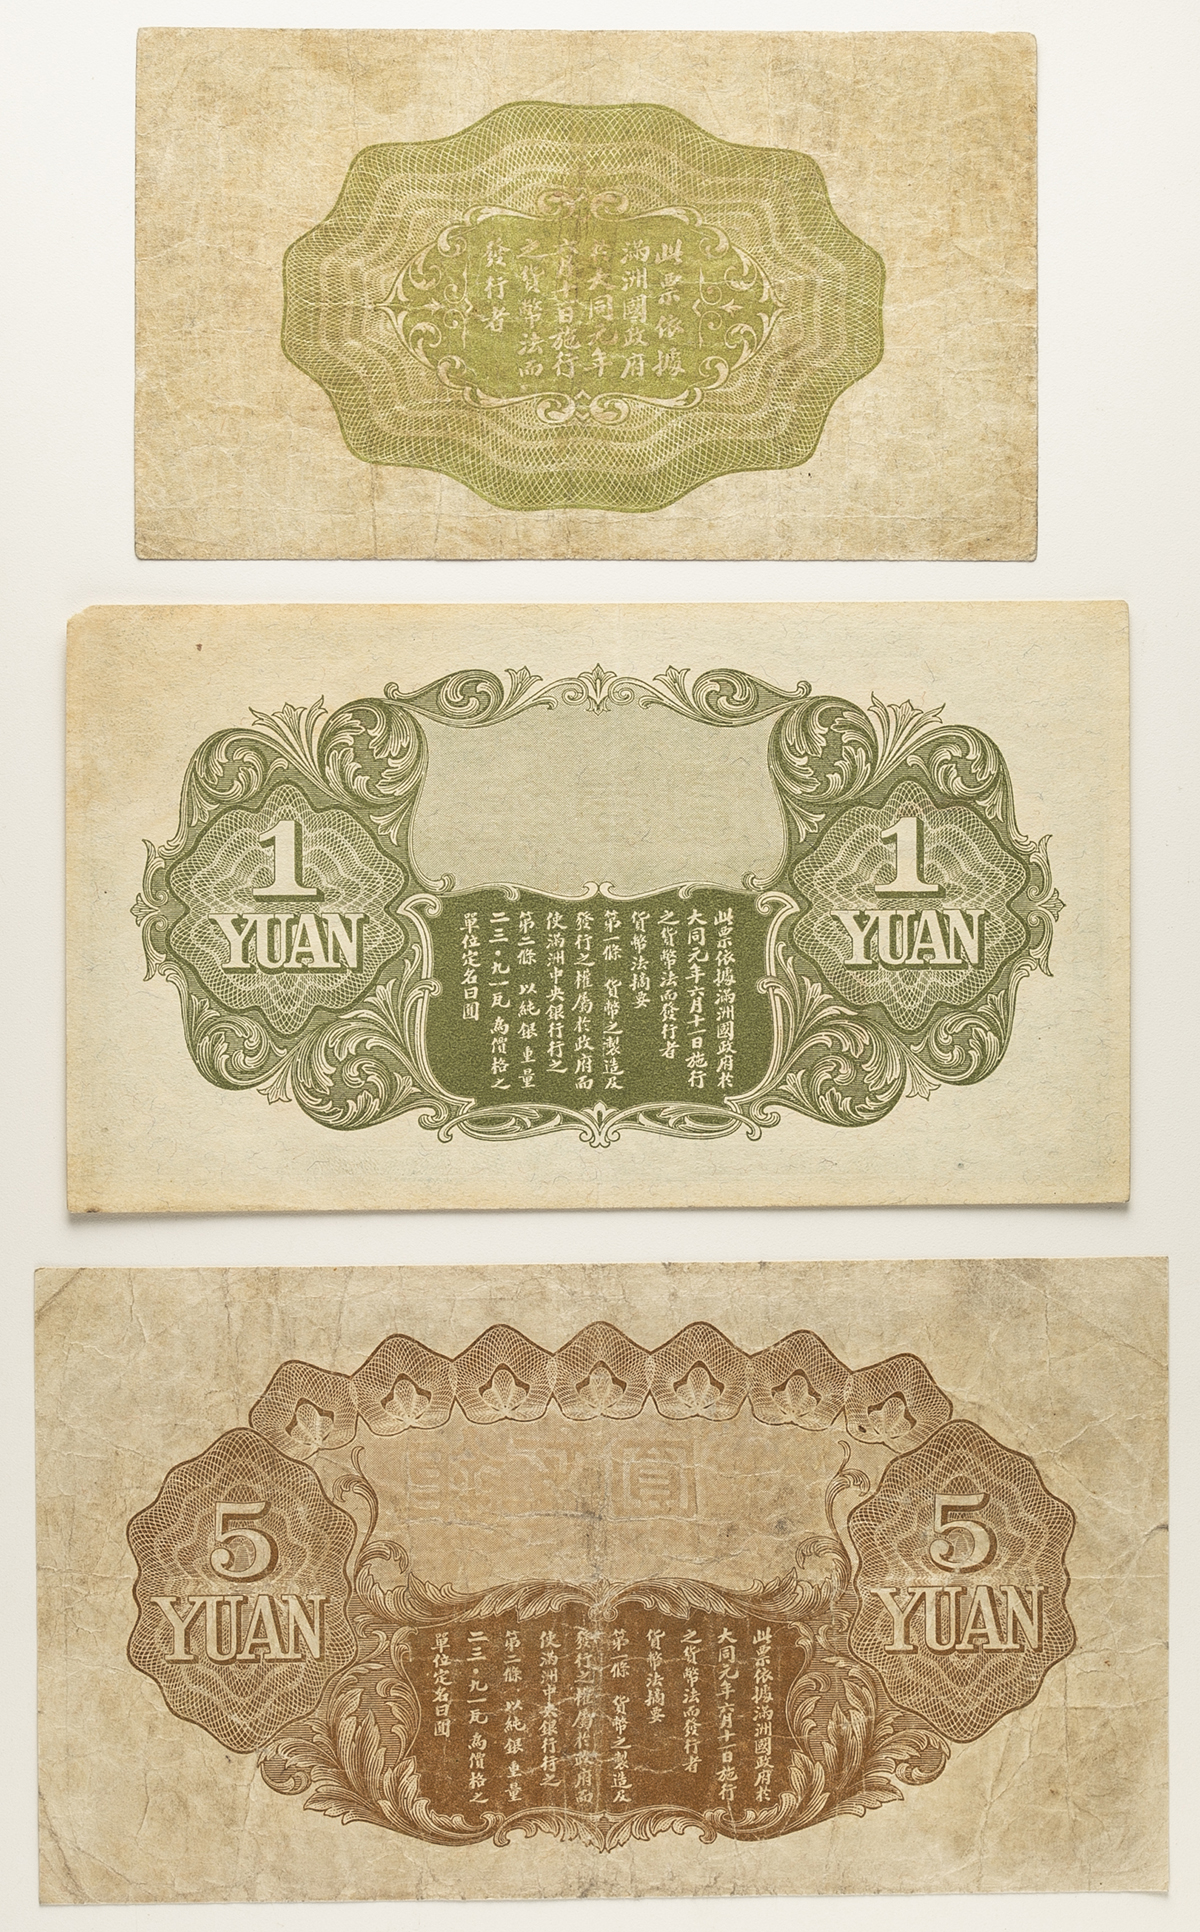 貨幣博物館 | 紙幣 Banknotes 満州中央銀行 Central Bank of Manchukuo